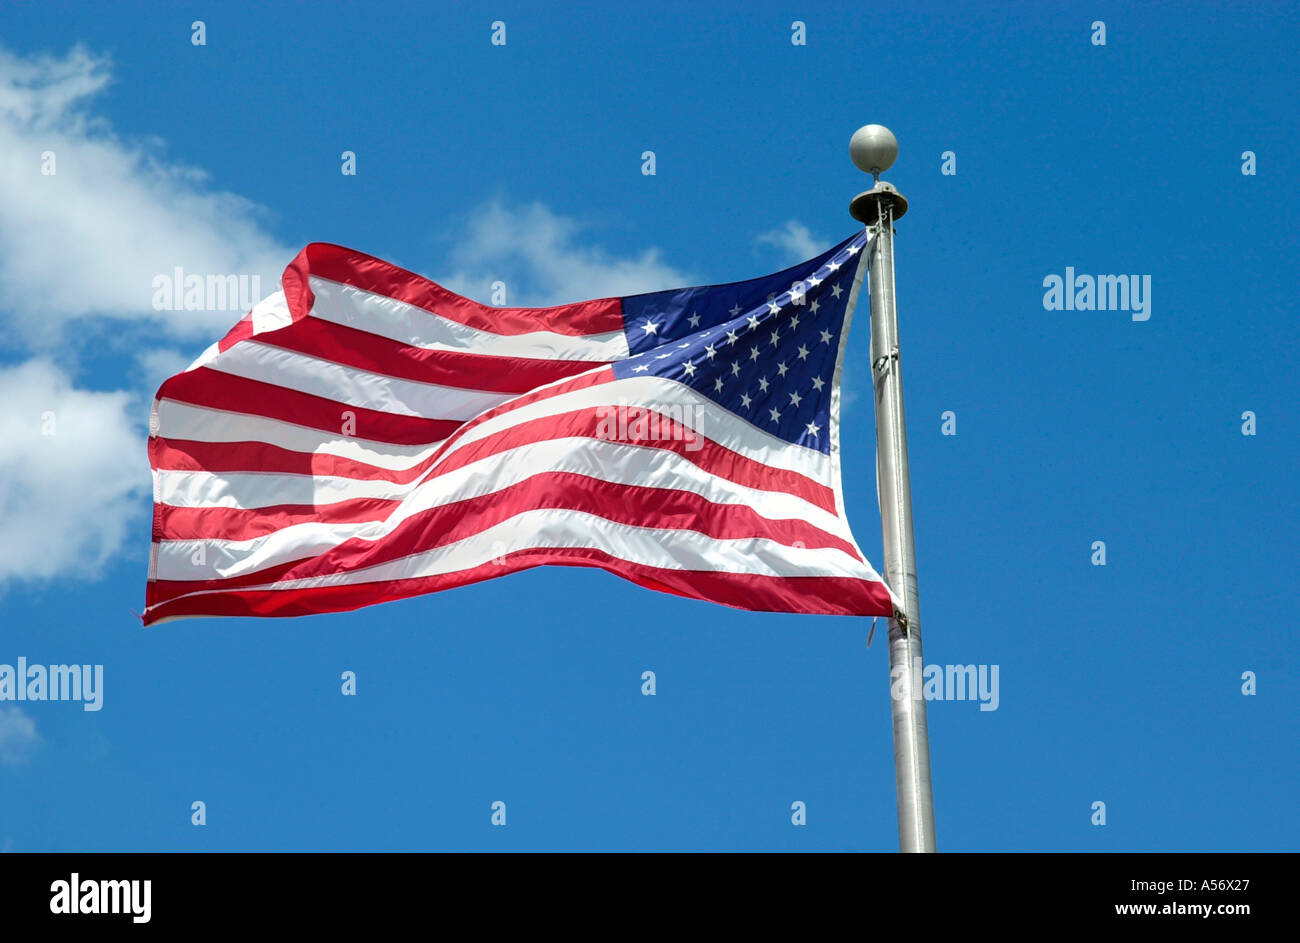 Stelle e Strisce della bandiera americana, Orlando, Florida, Stati Uniti d'America Foto Stock